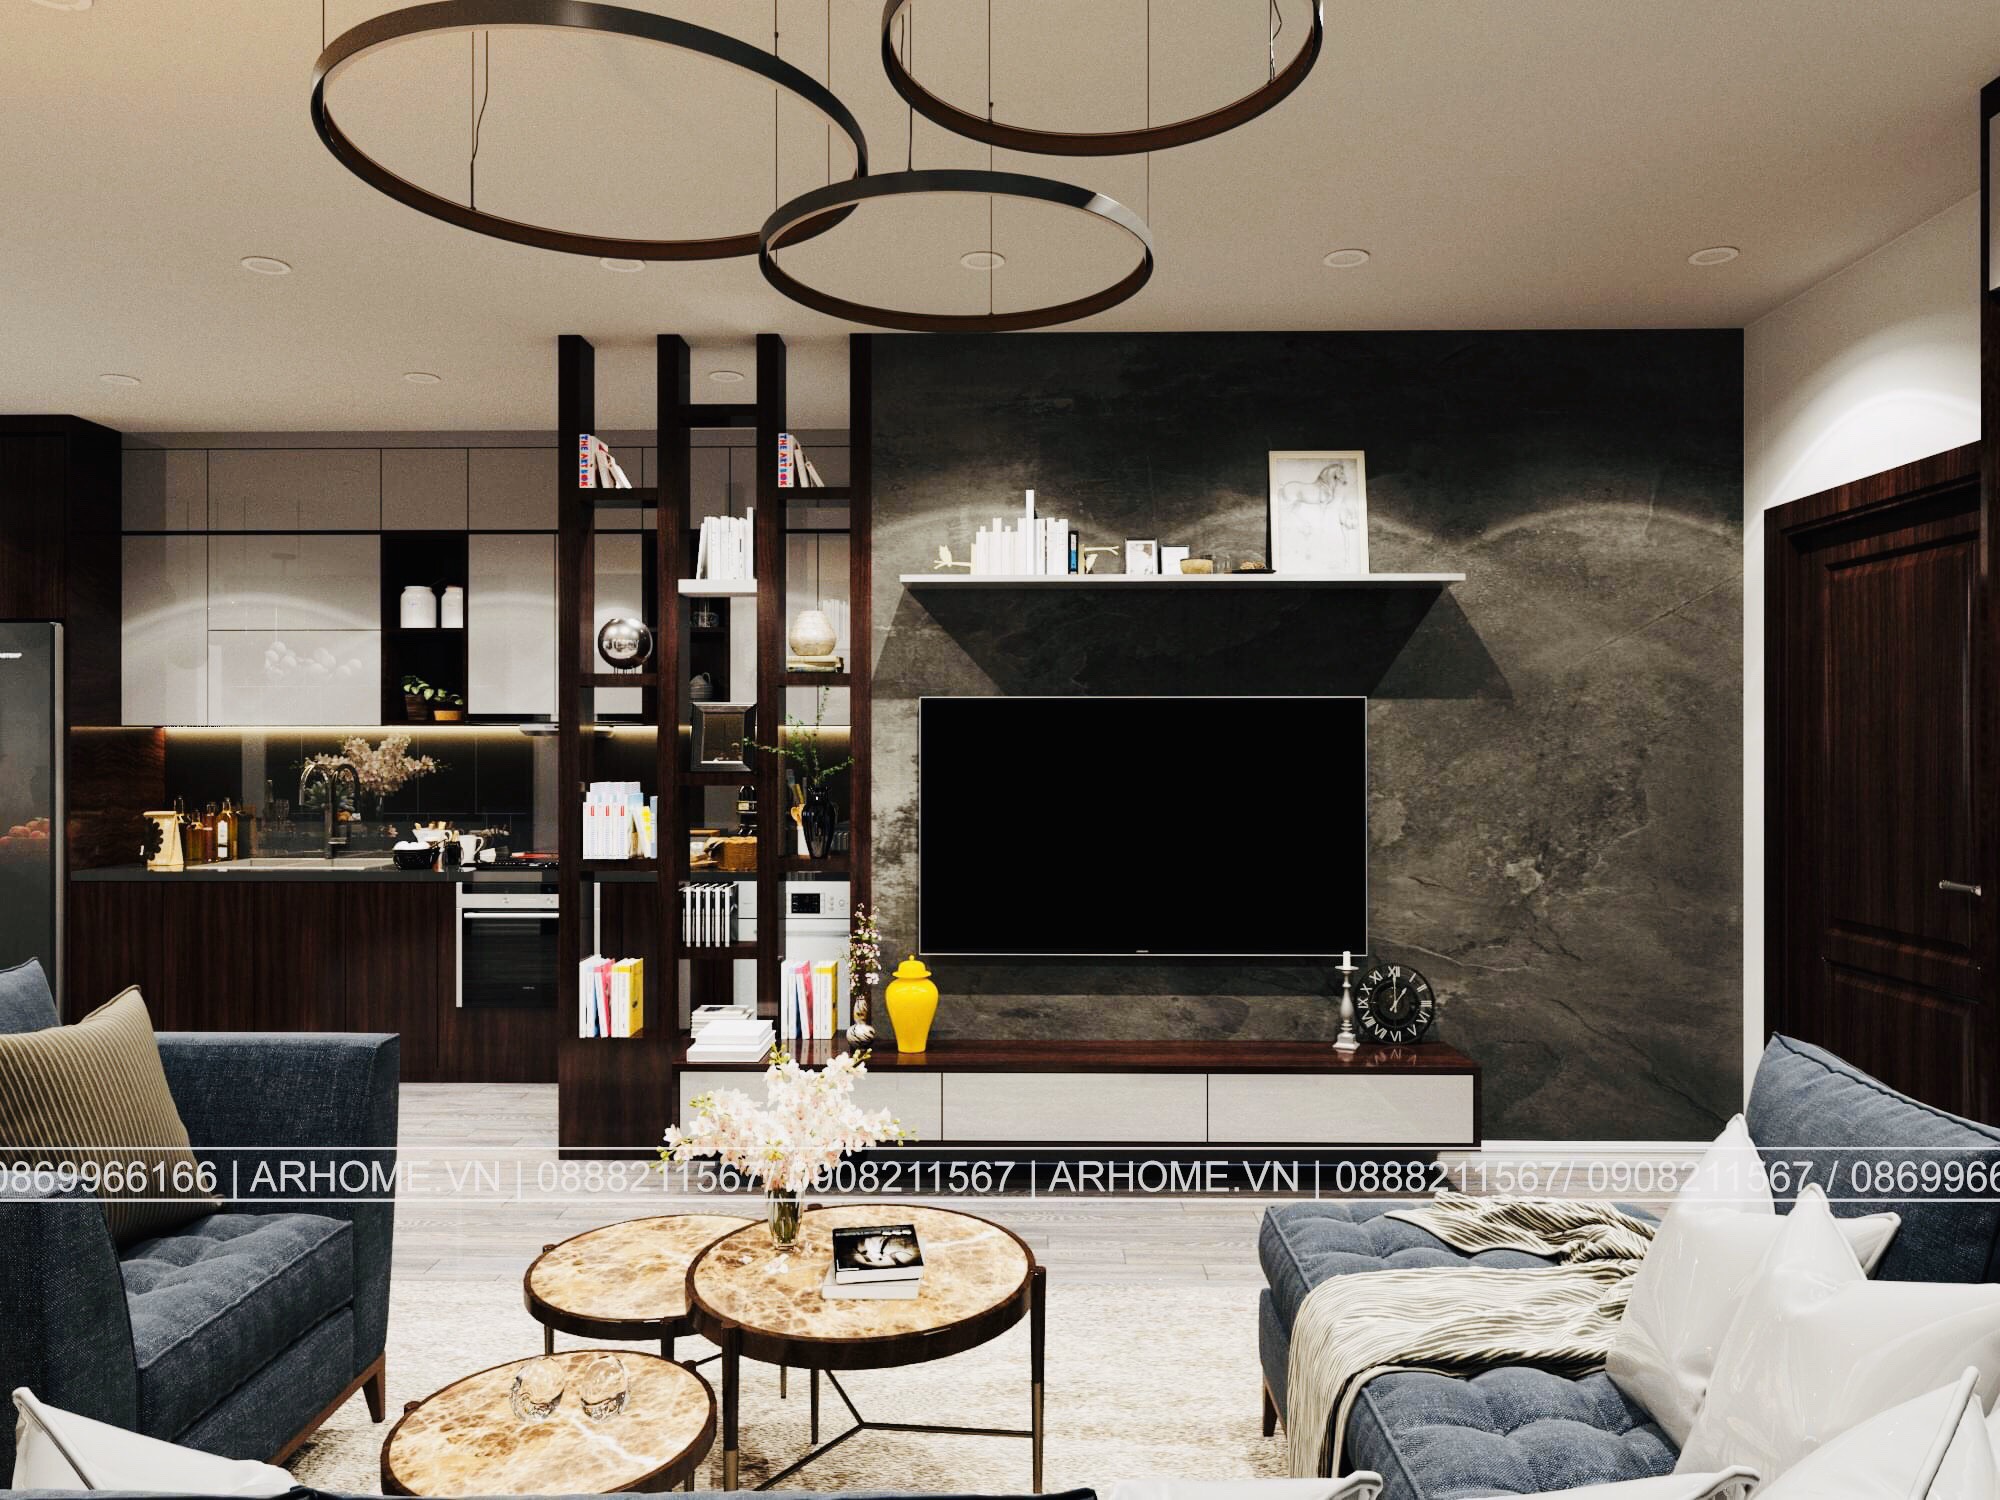 Thiết kế nội thất Chung Cư tại Hà Nội Thiết kế nội thất căn hộ chung cư Eurowindow màu nâu đen mạnh mẽ 1586590667 3